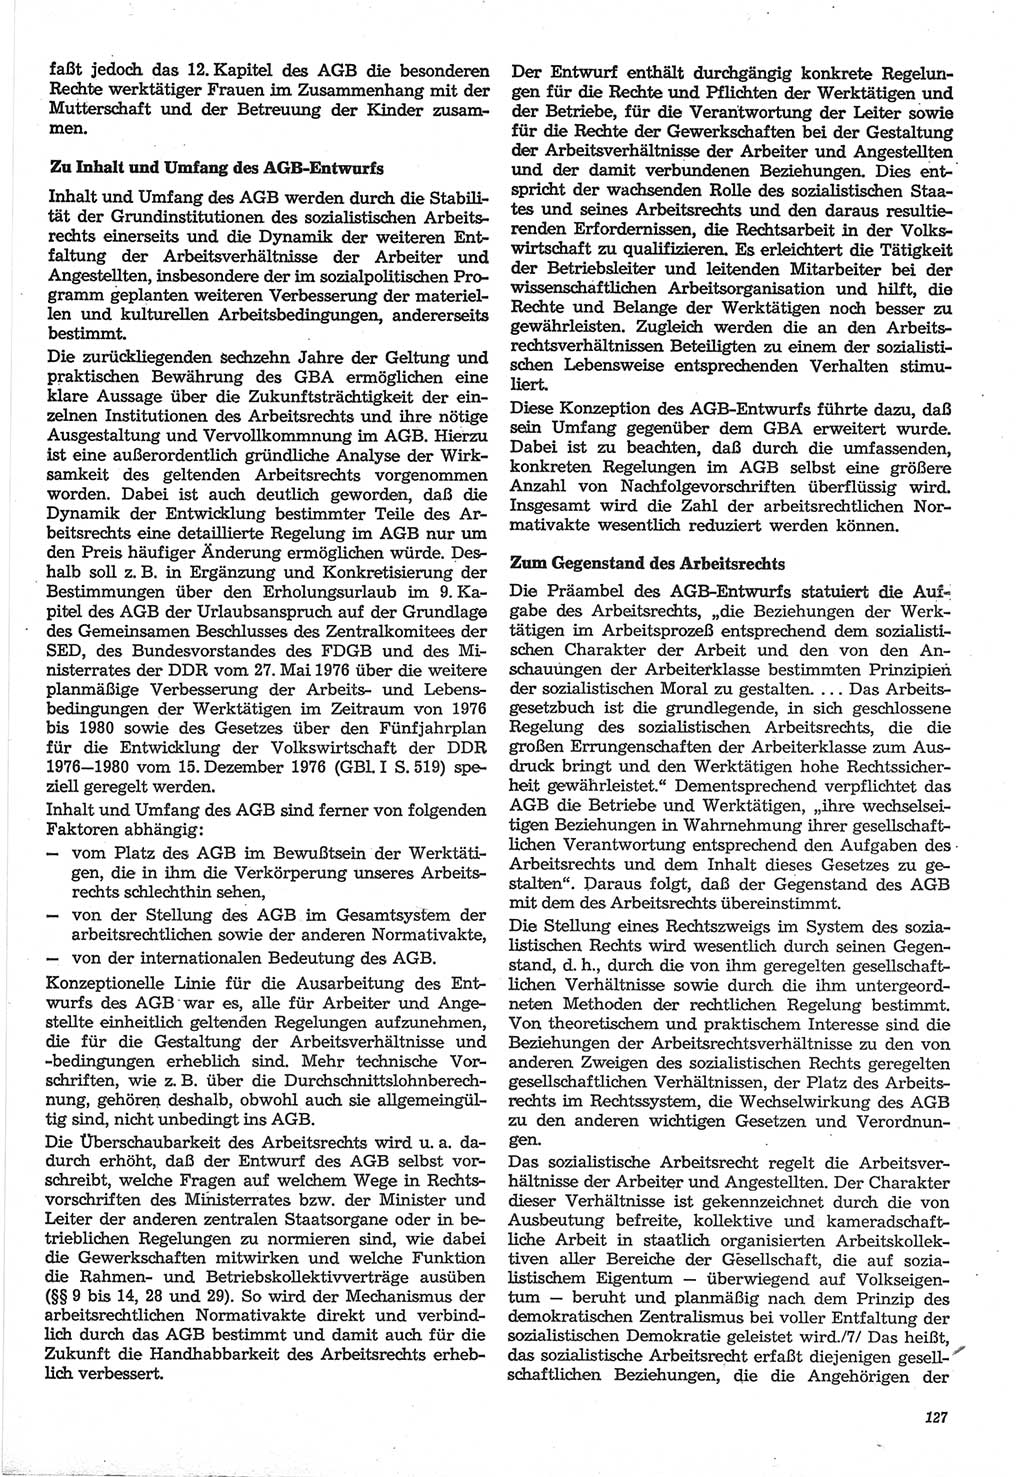 Neue Justiz (NJ), Zeitschrift für Recht und Rechtswissenschaft-Zeitschrift, sozialistisches Recht und Gesetzlichkeit, 31. Jahrgang 1977, Seite 127 (NJ DDR 1977, S. 127)